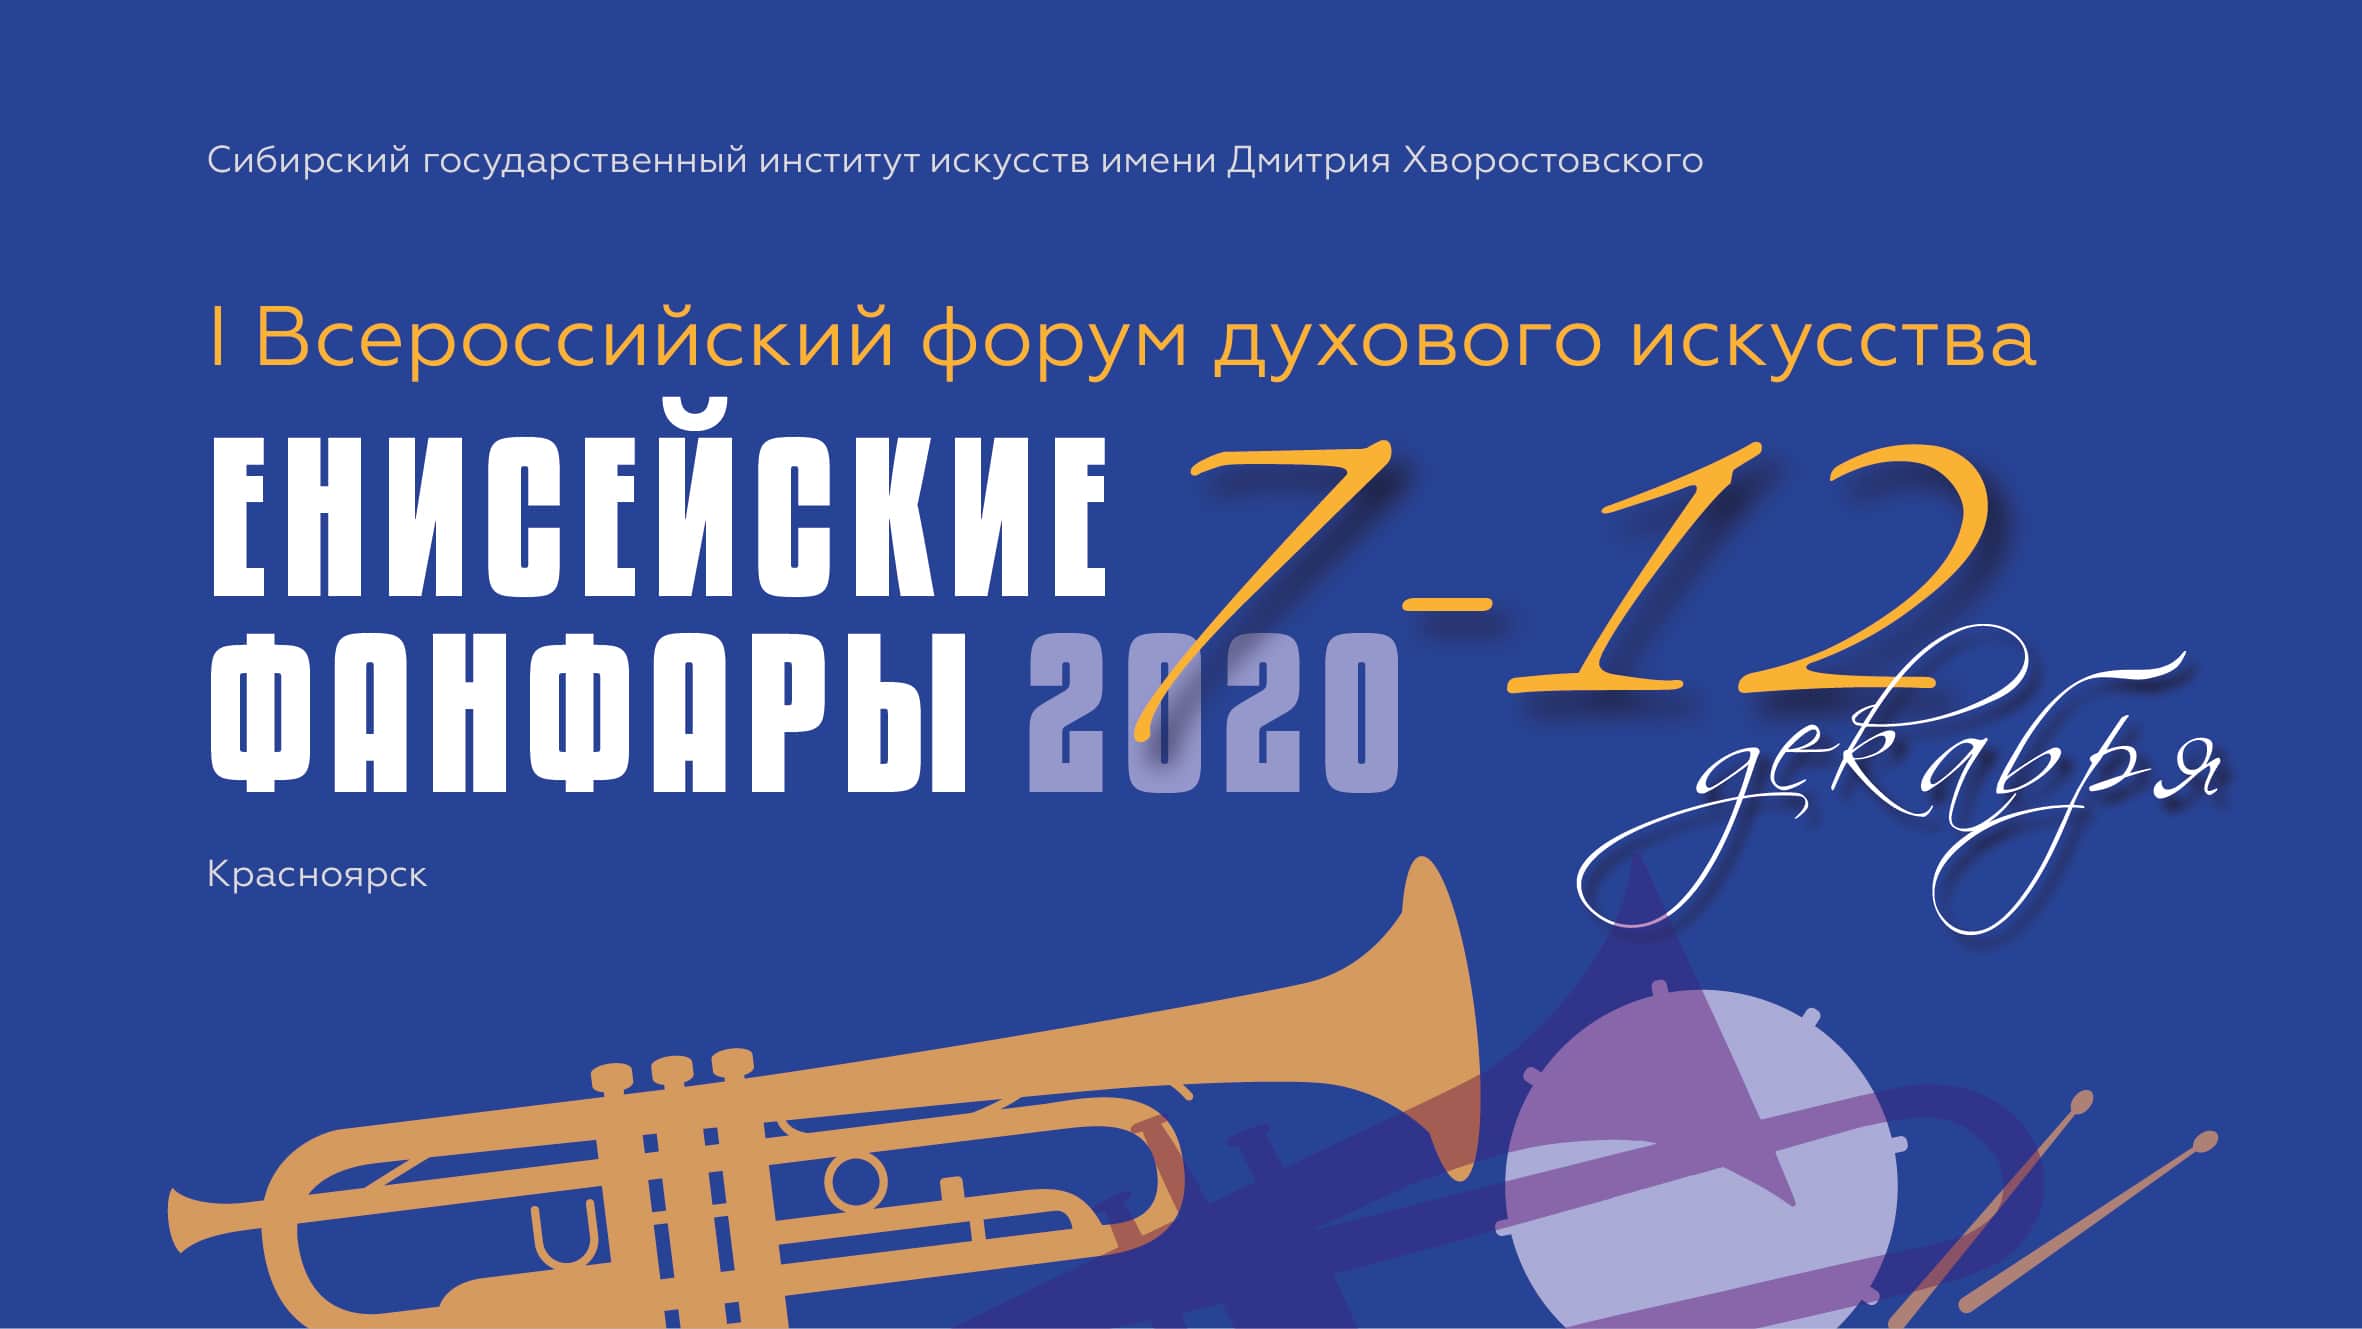 I Всероссийский форум духового искусства «Енисейские фанфары – 2020»